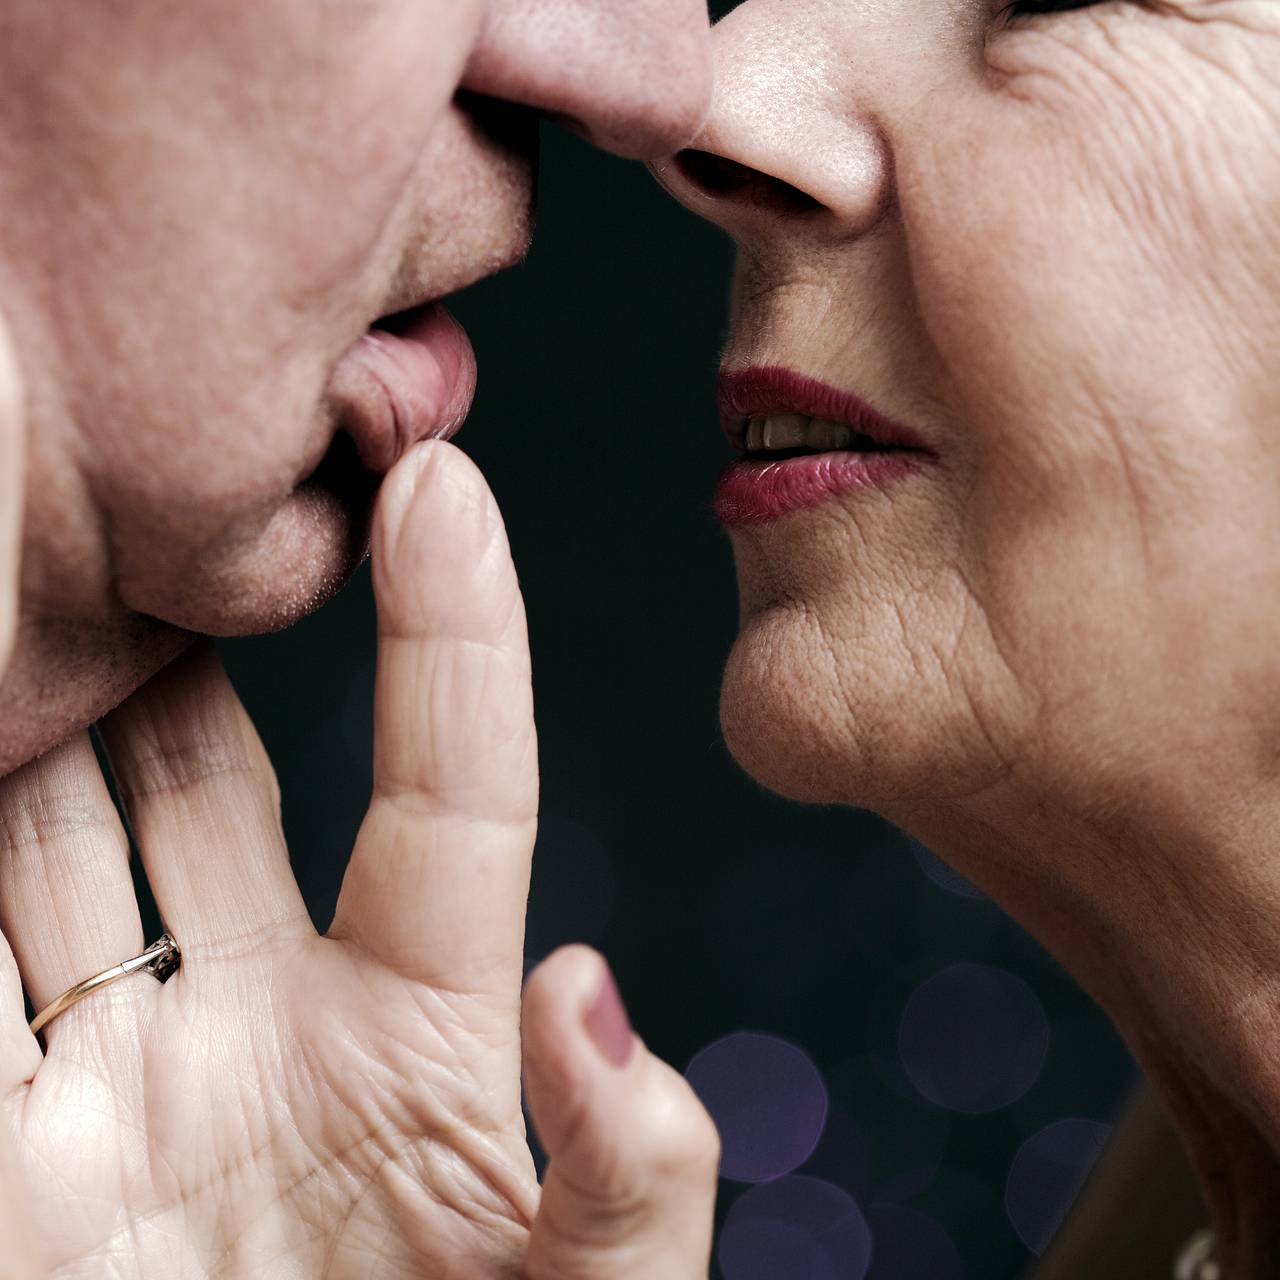 Пенсионеры рассказывают, как они любят, занимаются сексом и ходят на свидания - Афиша Daily